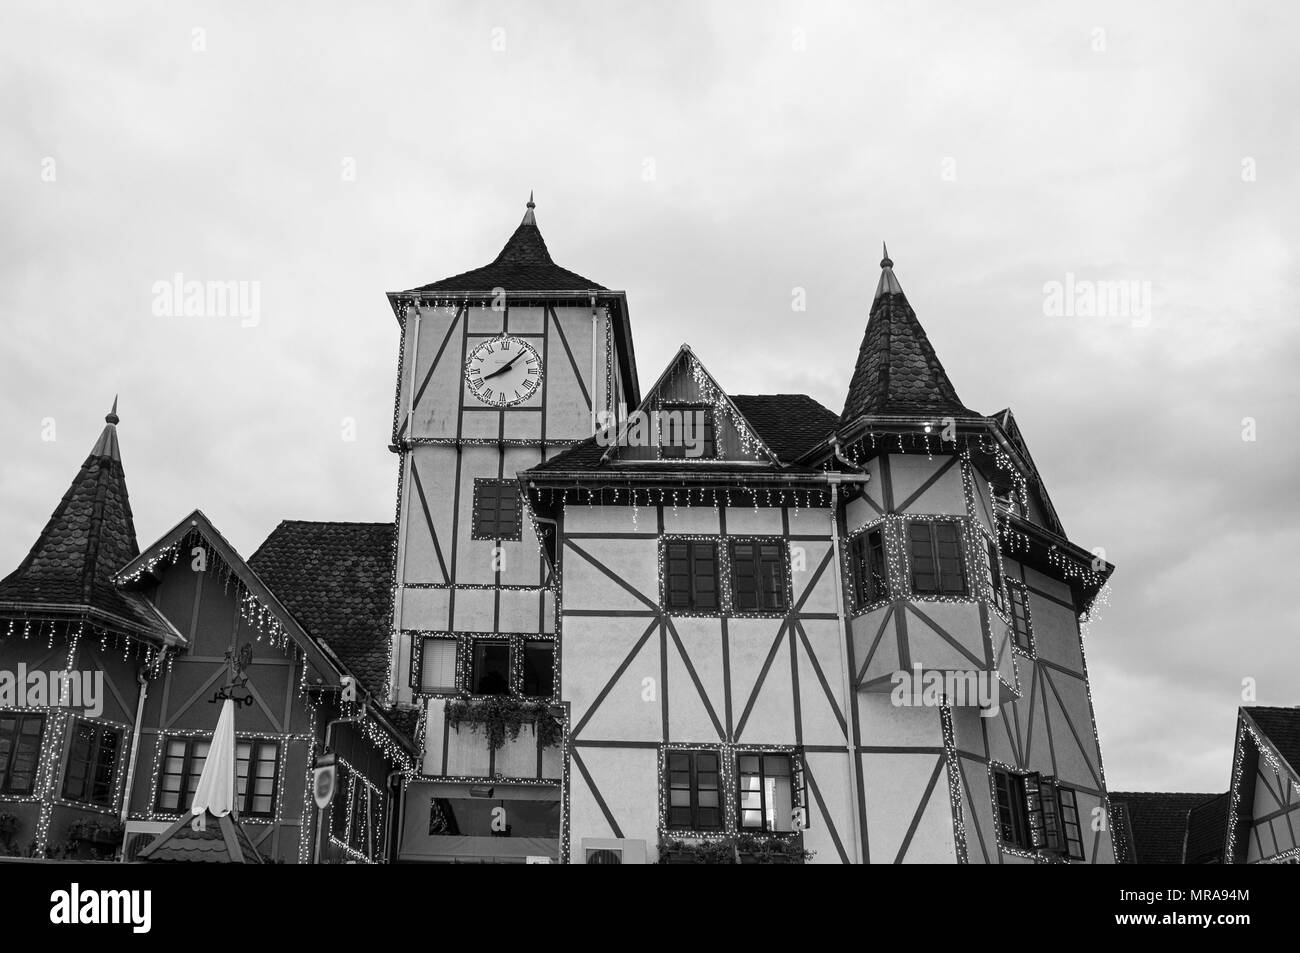 Blumenau ville architecture coloniale allemande enxaimel clock tower noir blanc Banque D'Images